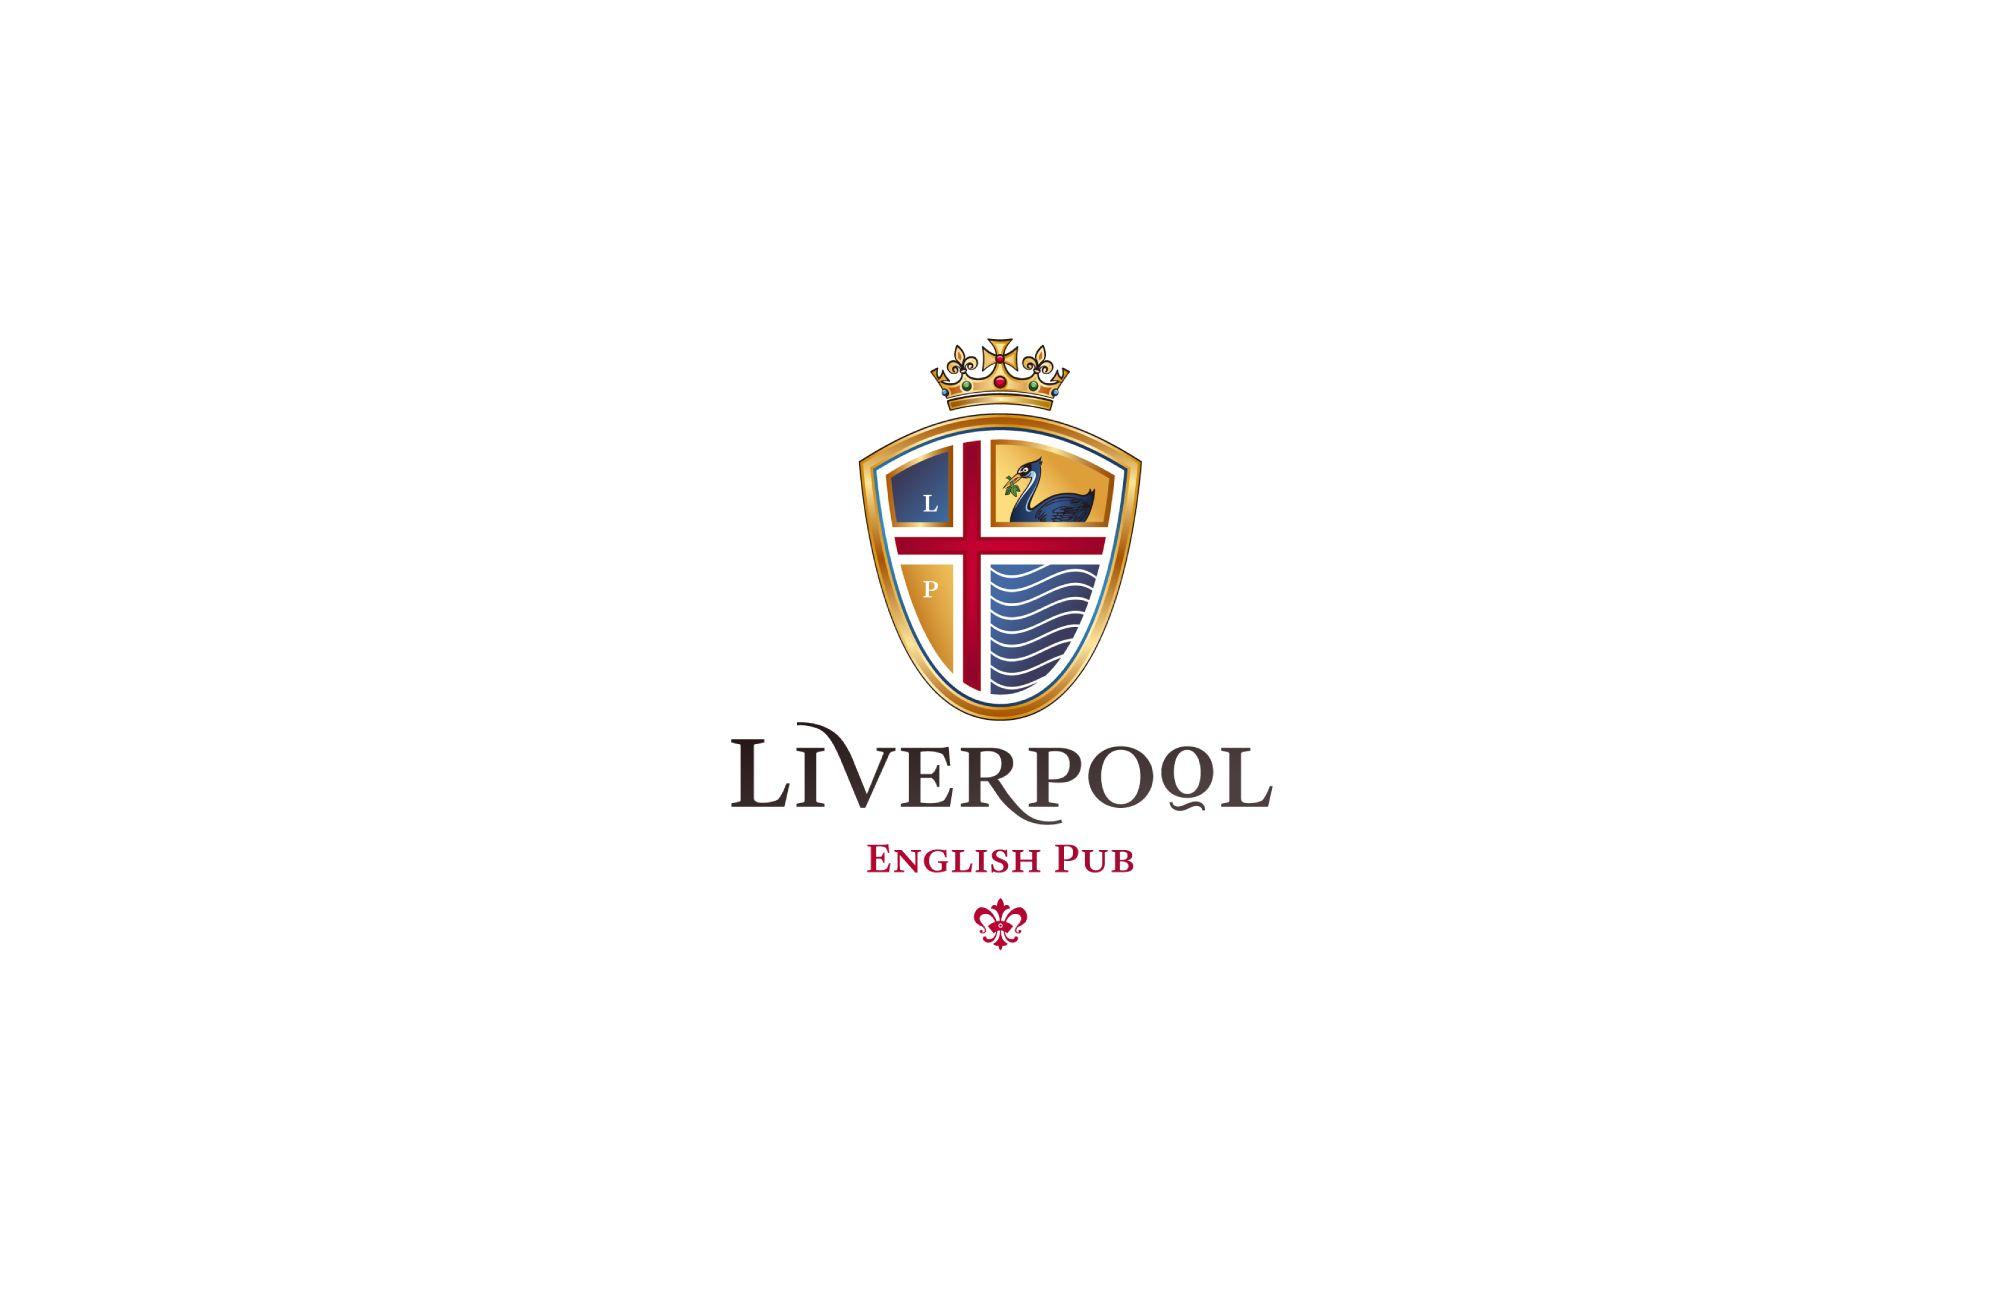 English Pub Logo - Liverpool English Pub and Reyner